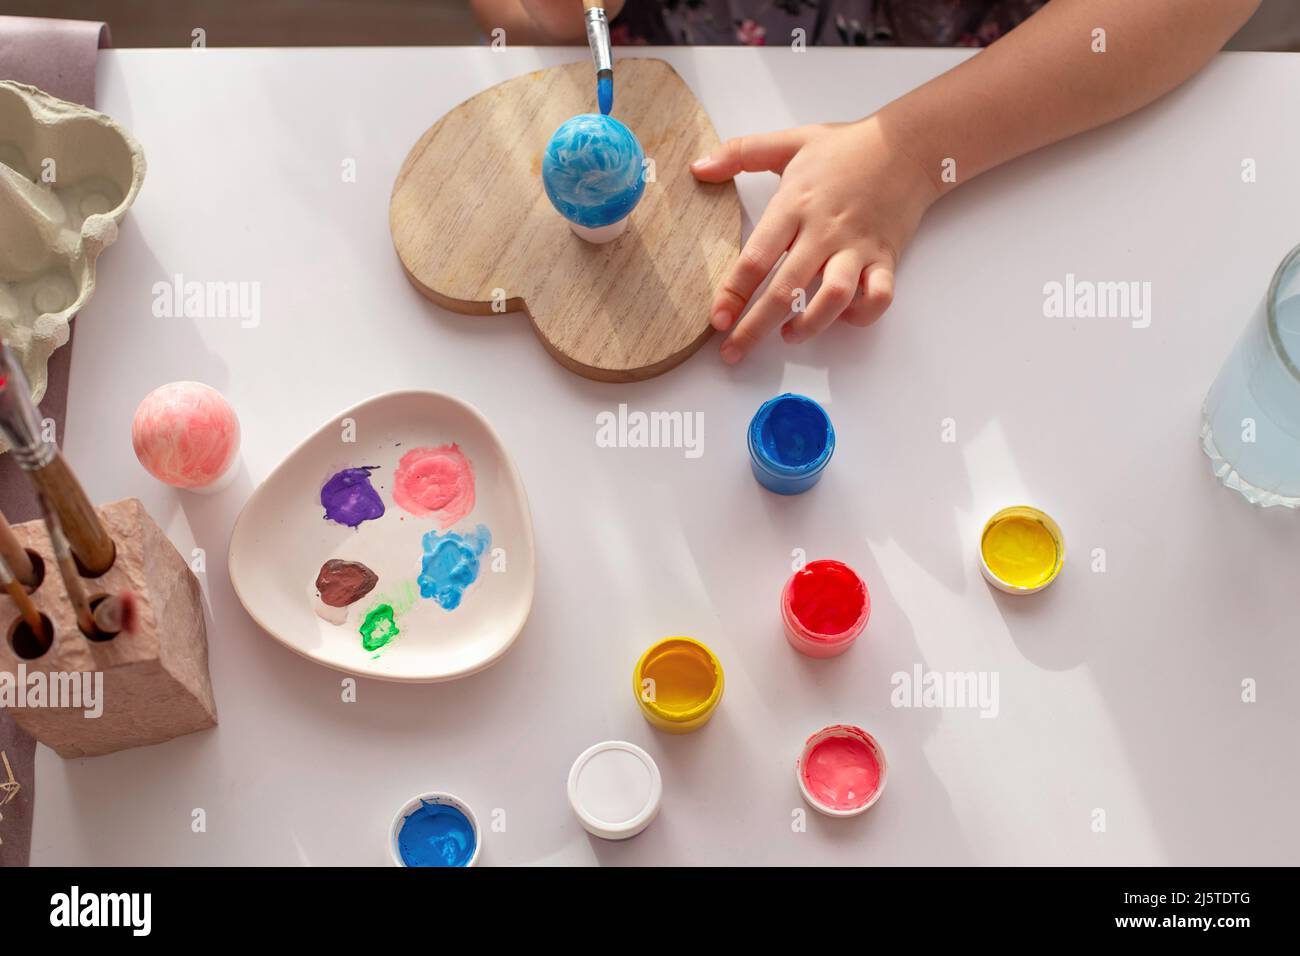 Le mani dei bambini dipingono un uovo, su un tavolo bianco con vernici multicolore in vasetti Foto Stock